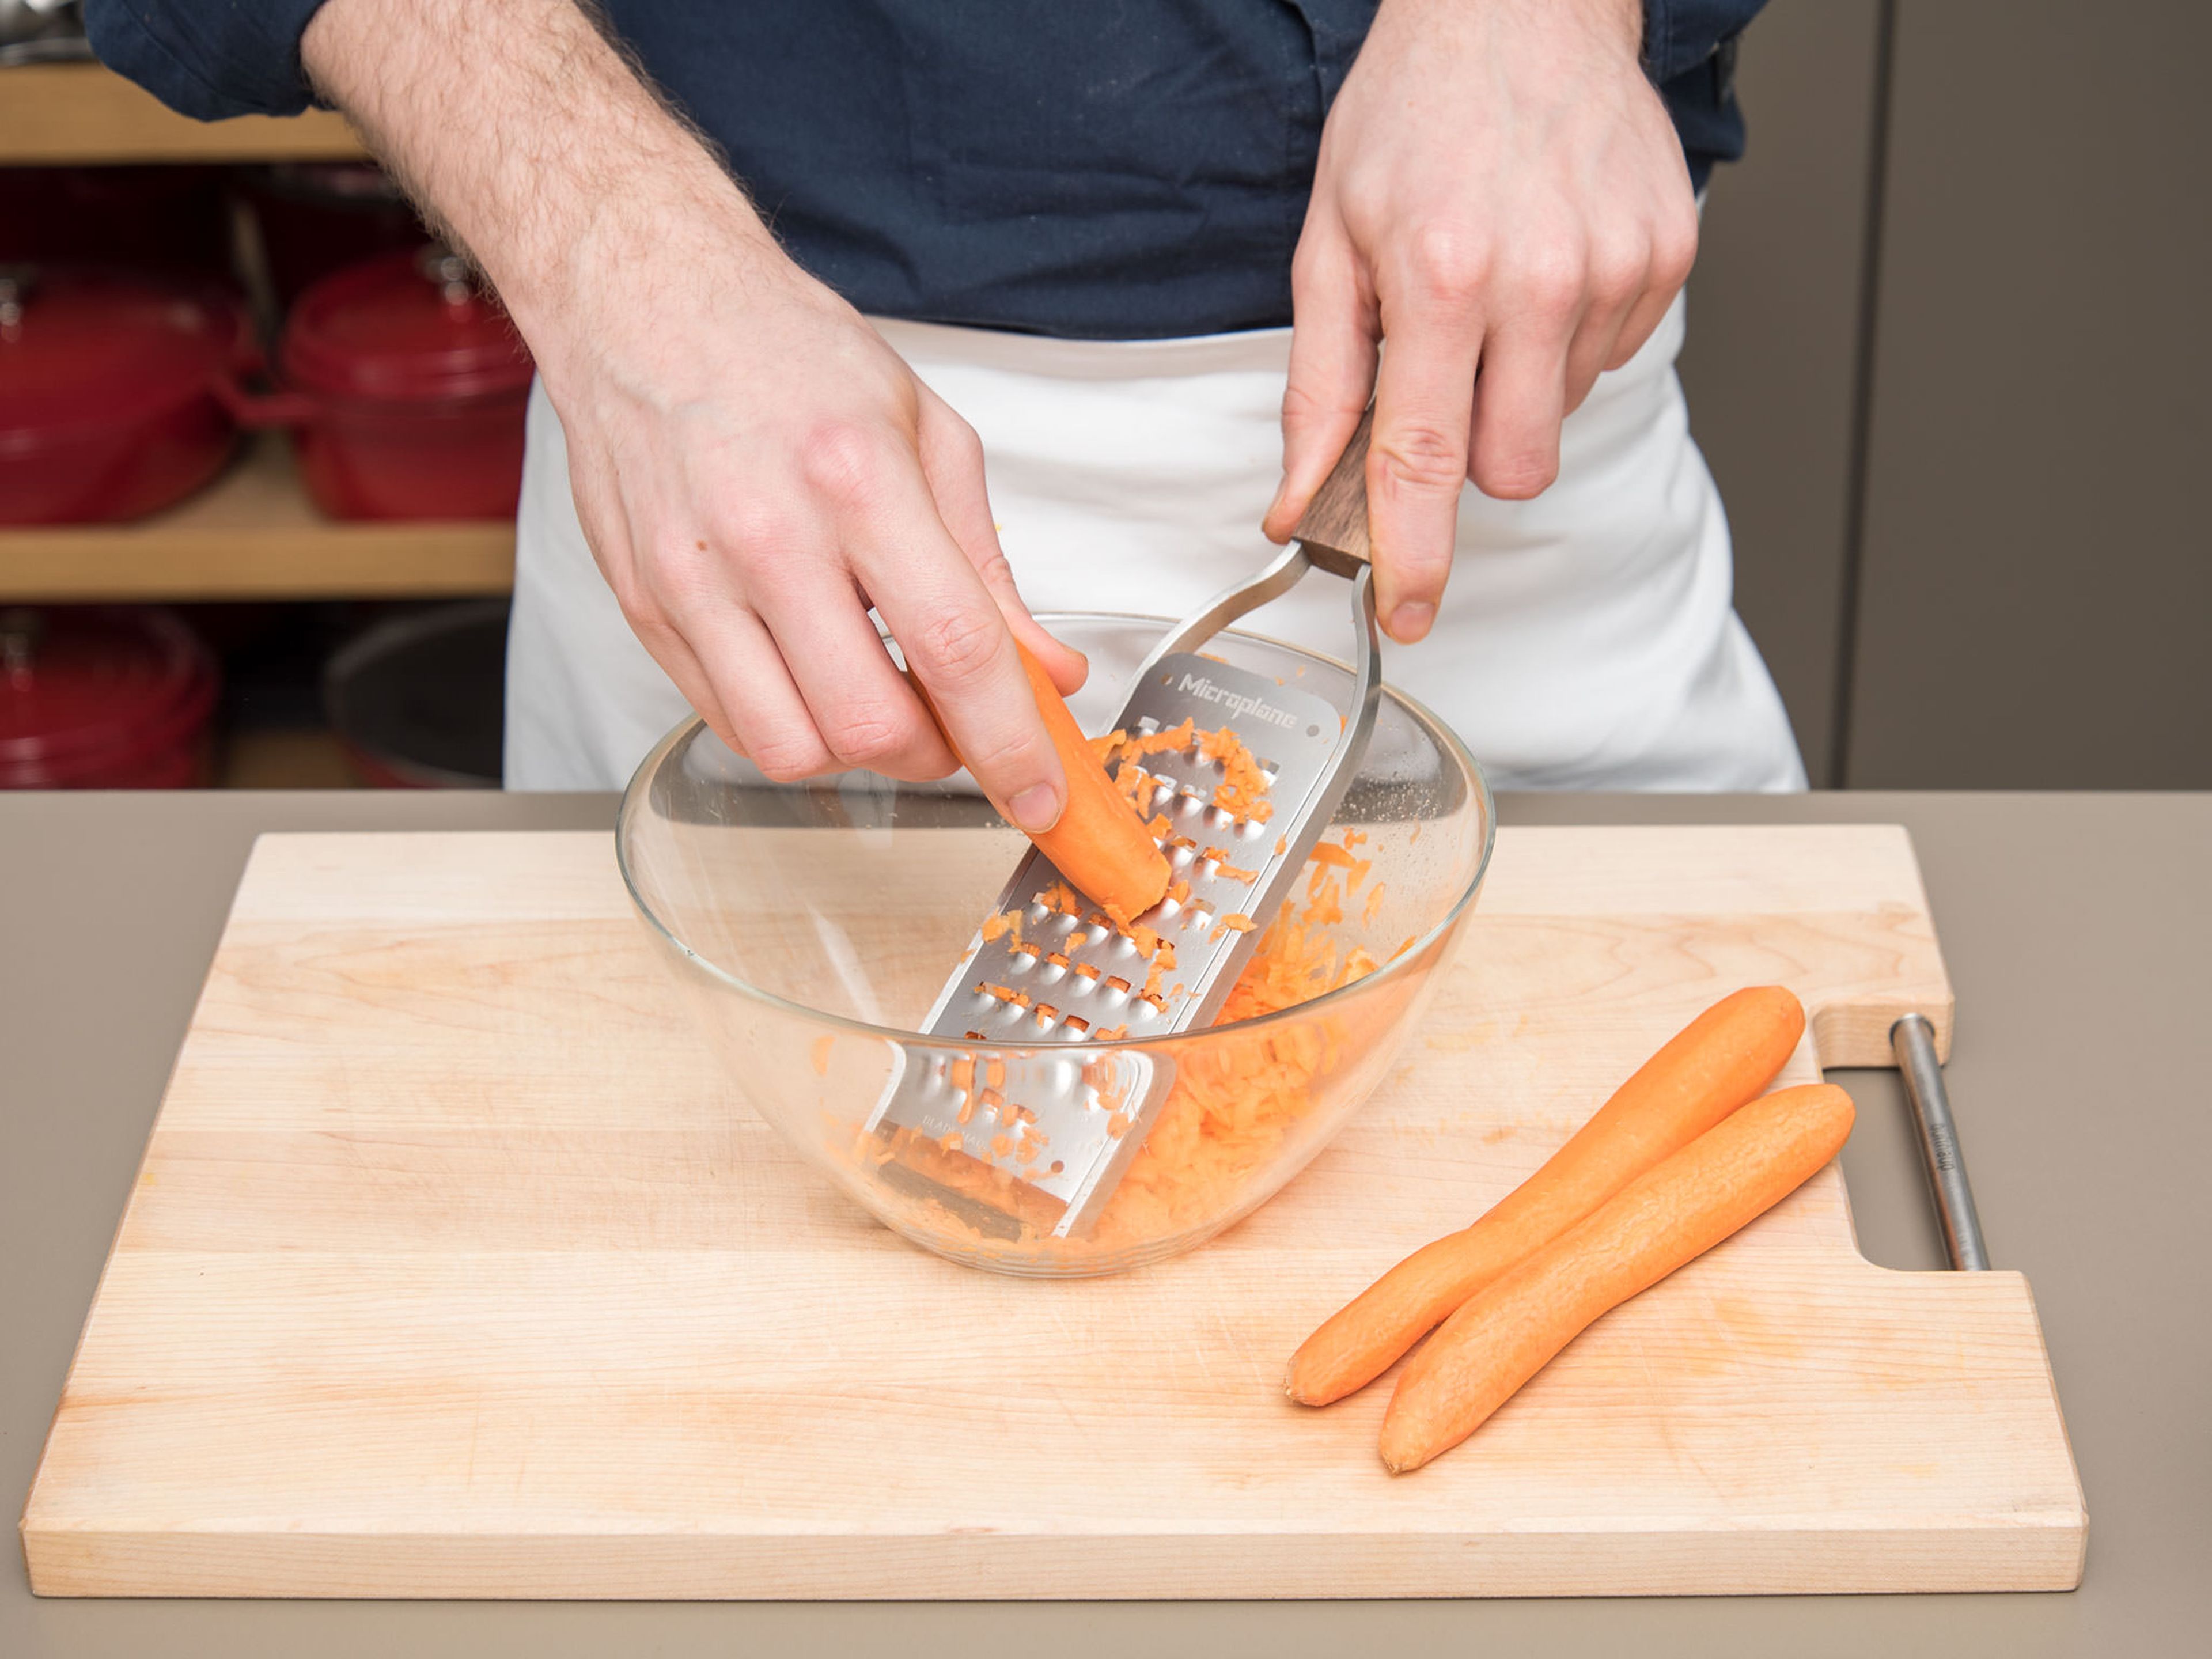 Backofen auf 170°C vorheizen. Springform mit Butter einfetten. Karotten schälen, reiben und beiseitestellen. Eier in zwei kleine Schüsseln trennen.